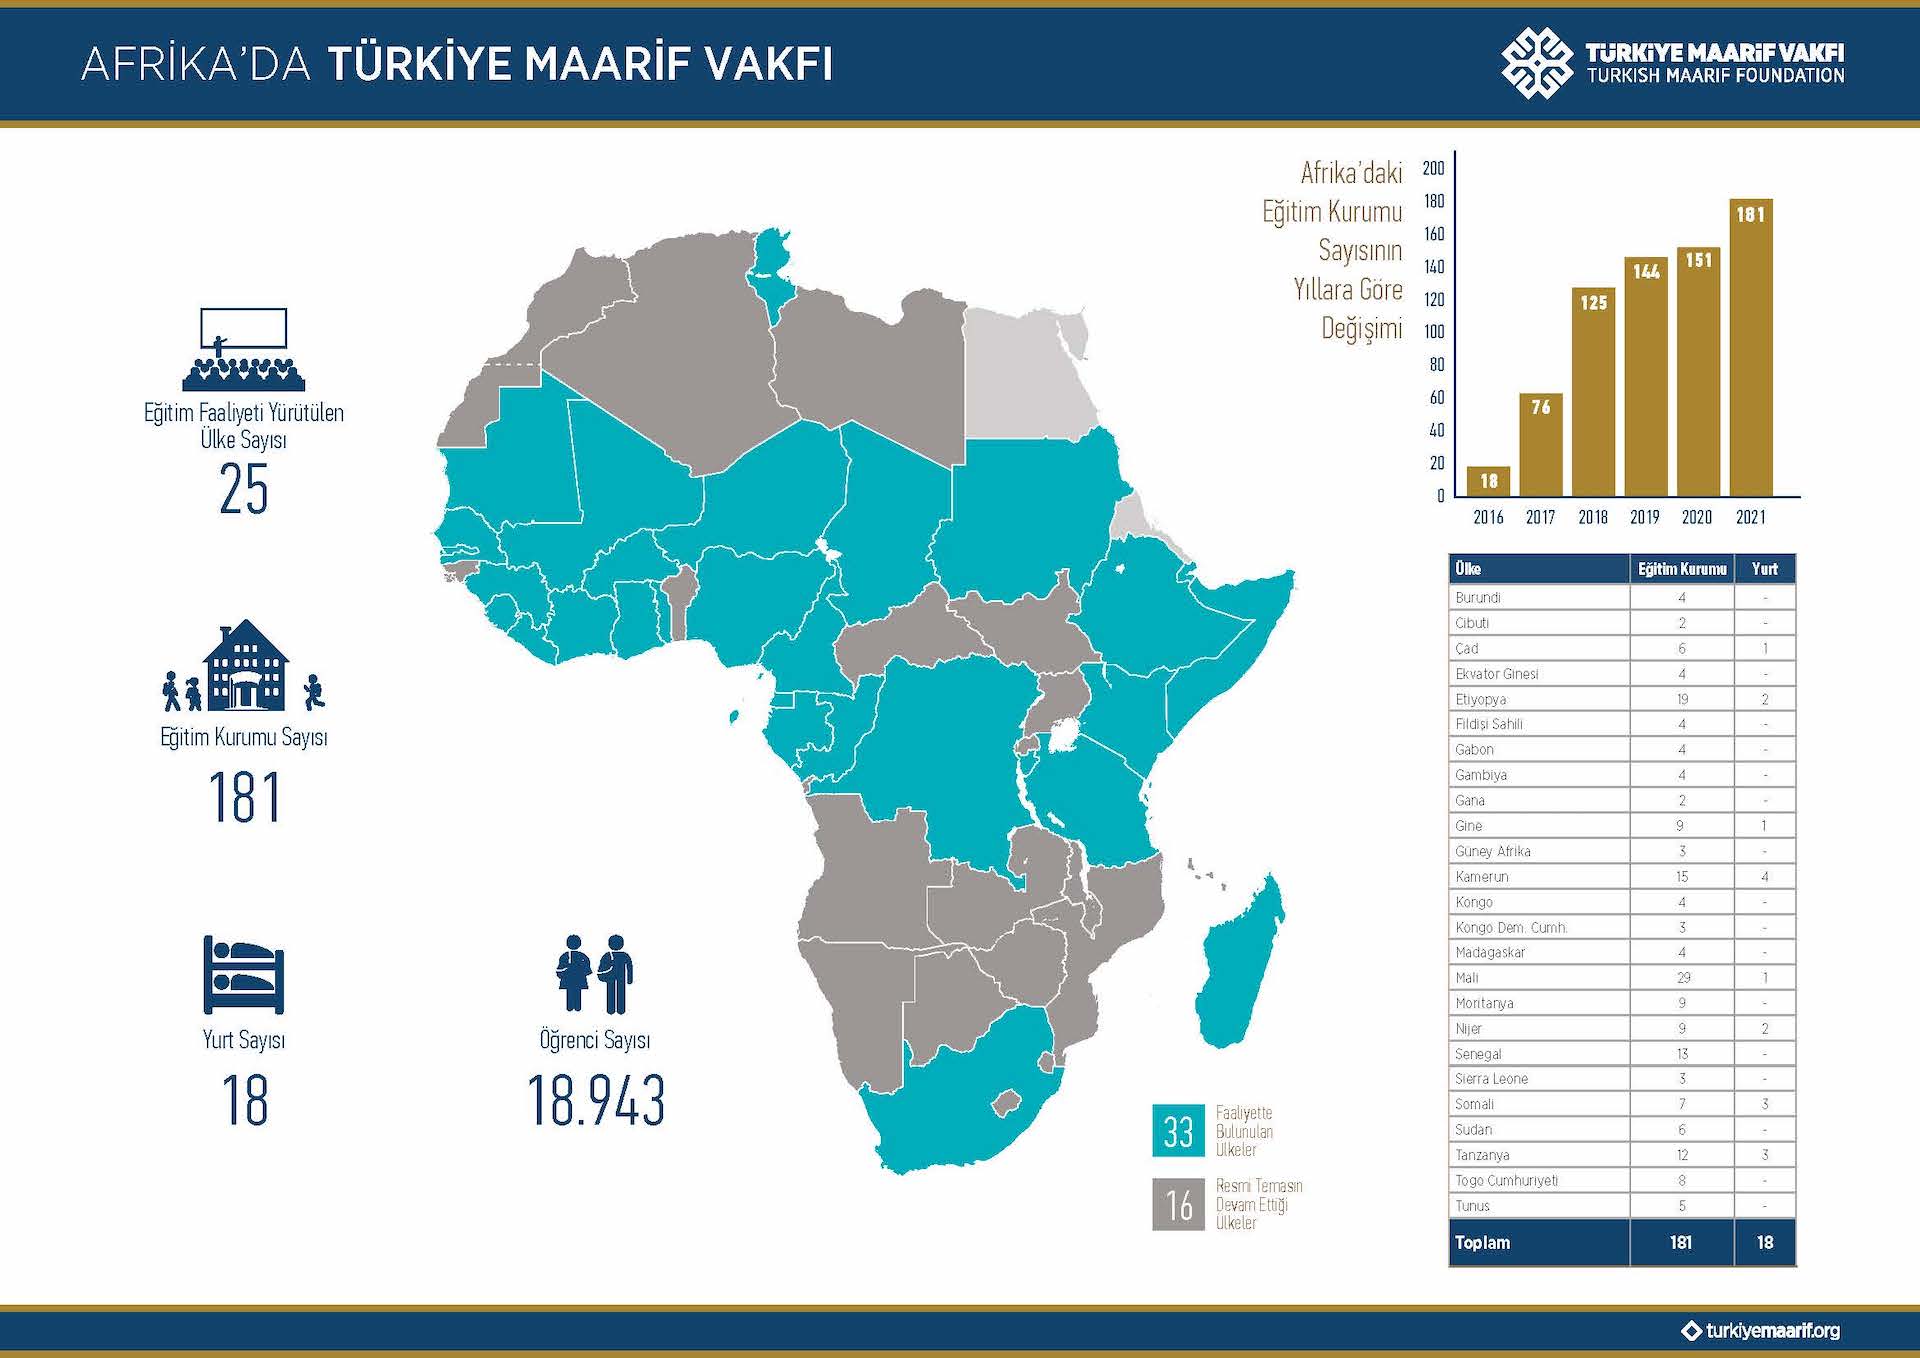 Afrika'da Türkiye Maarif Vakfı, info